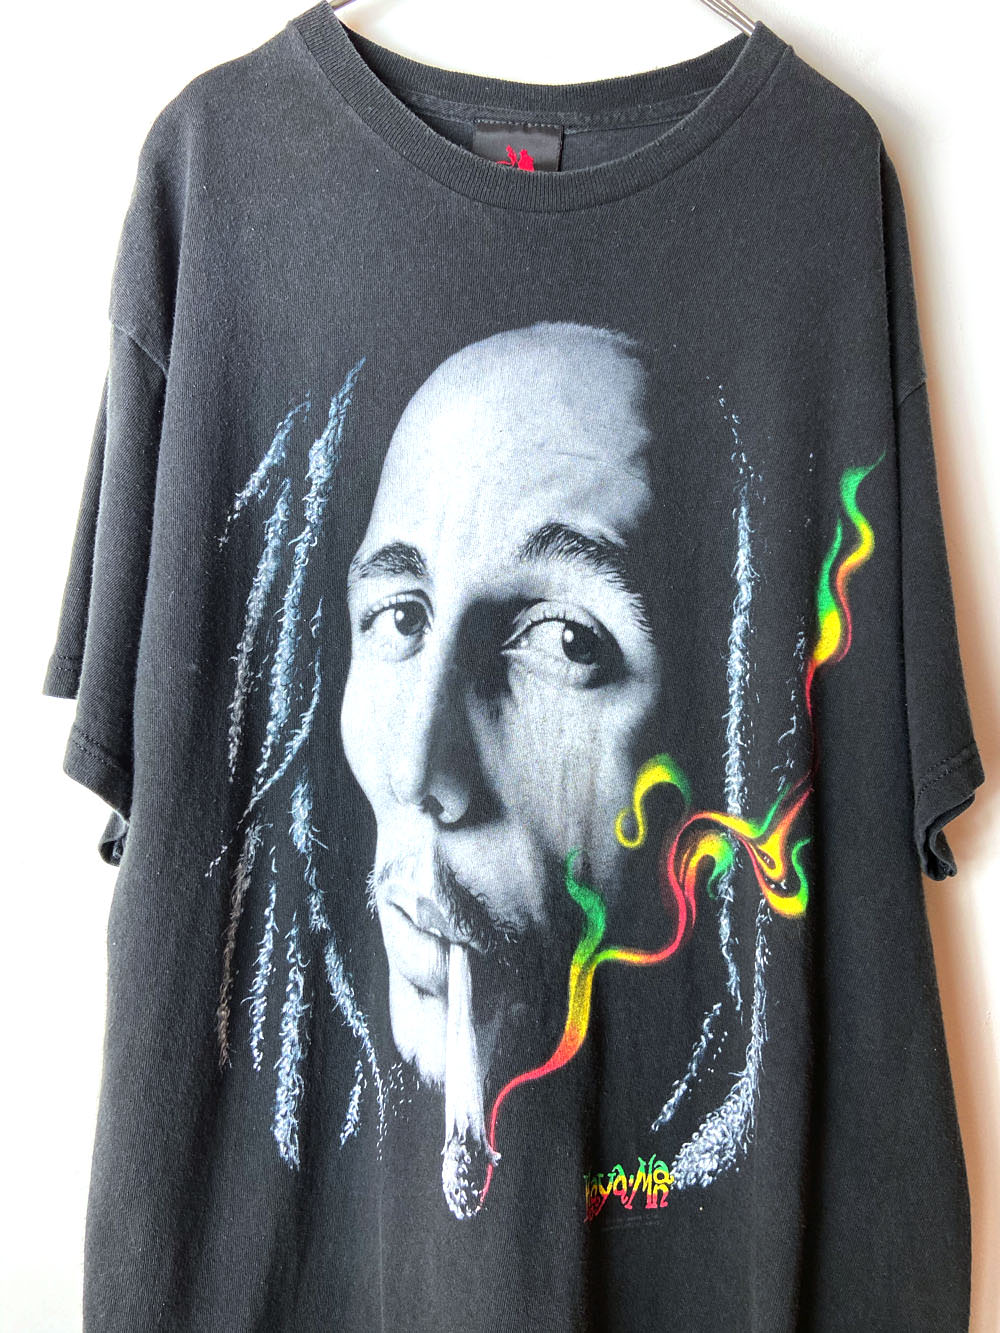 ヴィンテージ プリントTシャツ【Bob Marley】Vintage Print T-shirts 古着 通販 ヴィンテージ古着屋  RUMHOLE beruf Online Store 公式通販サイト RUMHOLEberuf